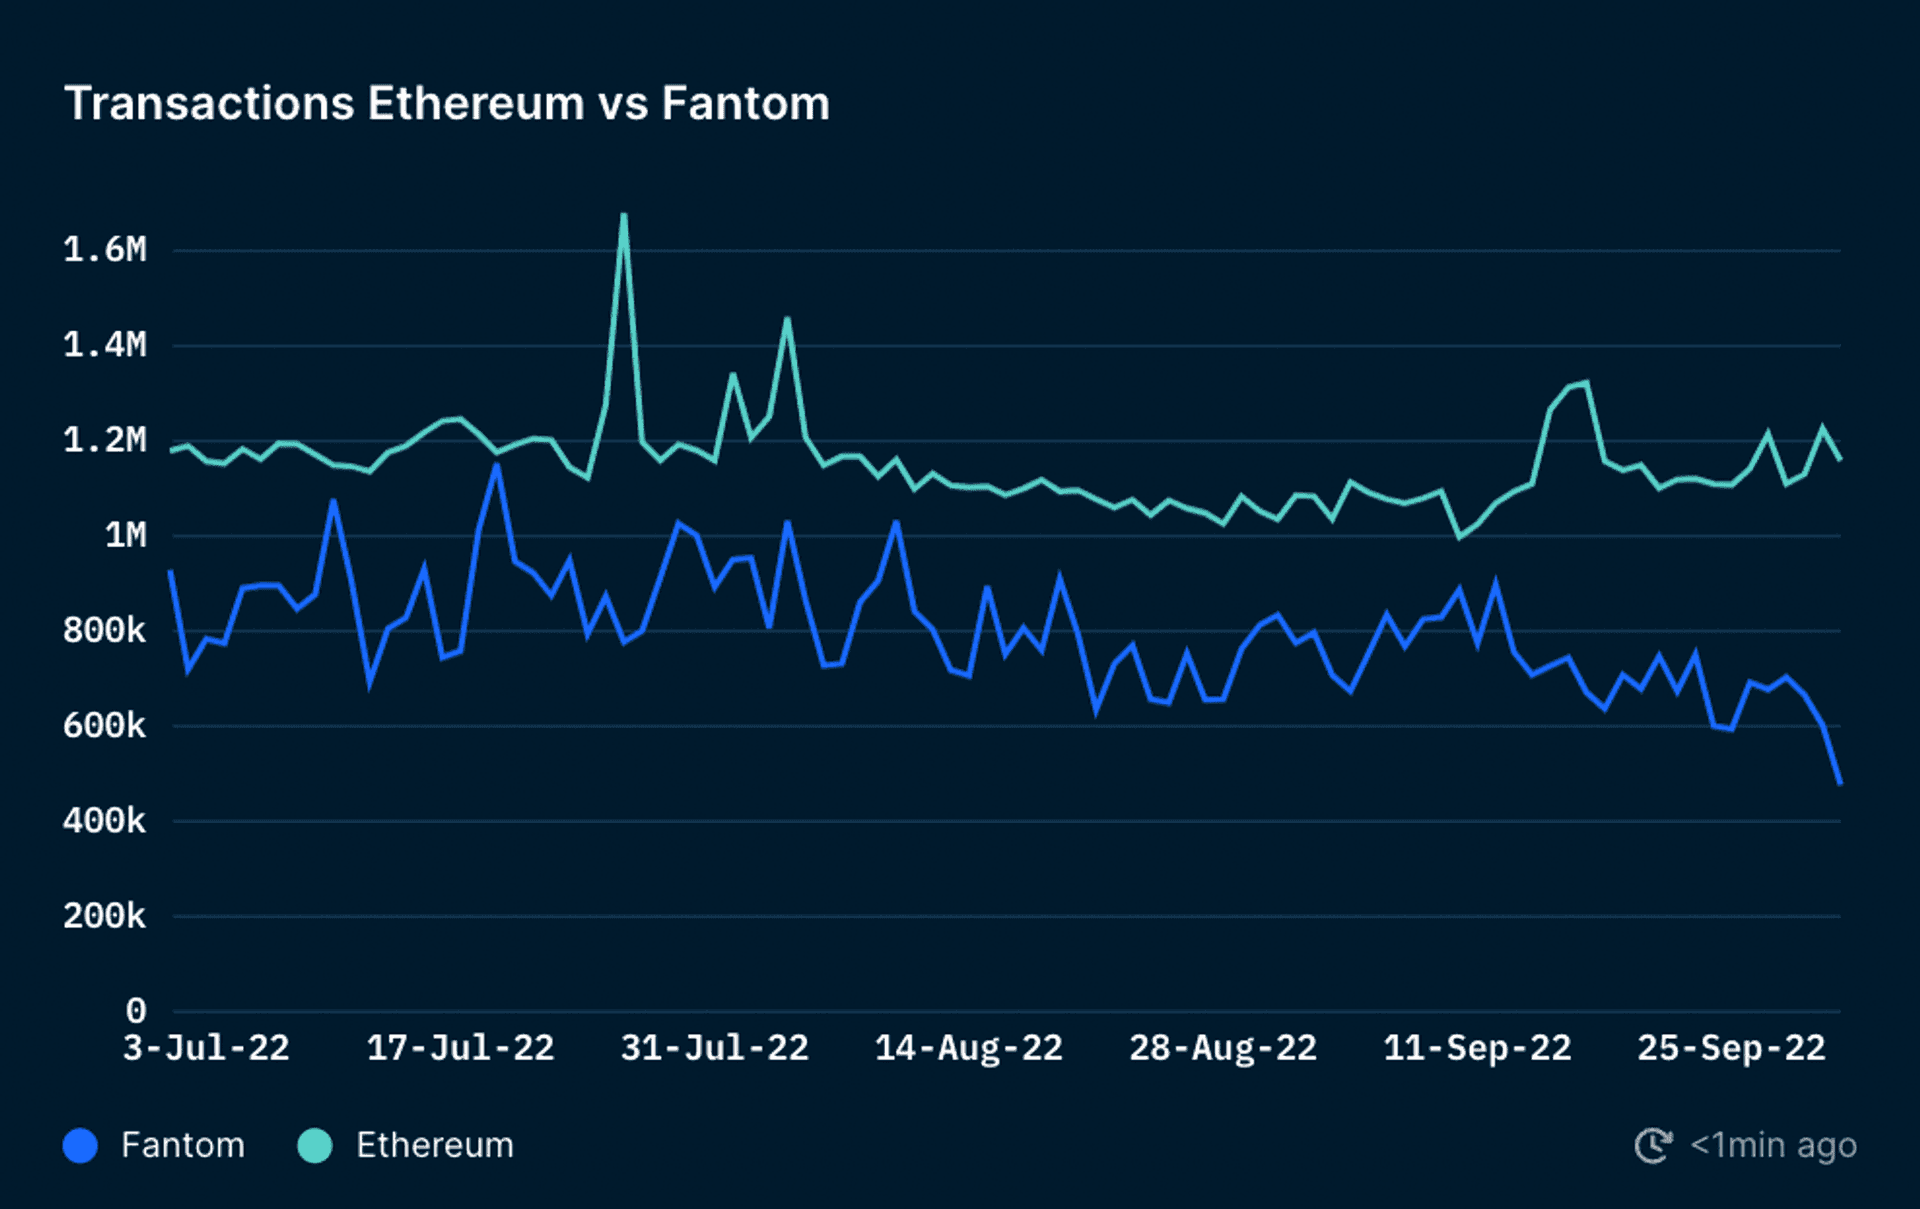 Daily Transactions on Ethereum vs Fantom